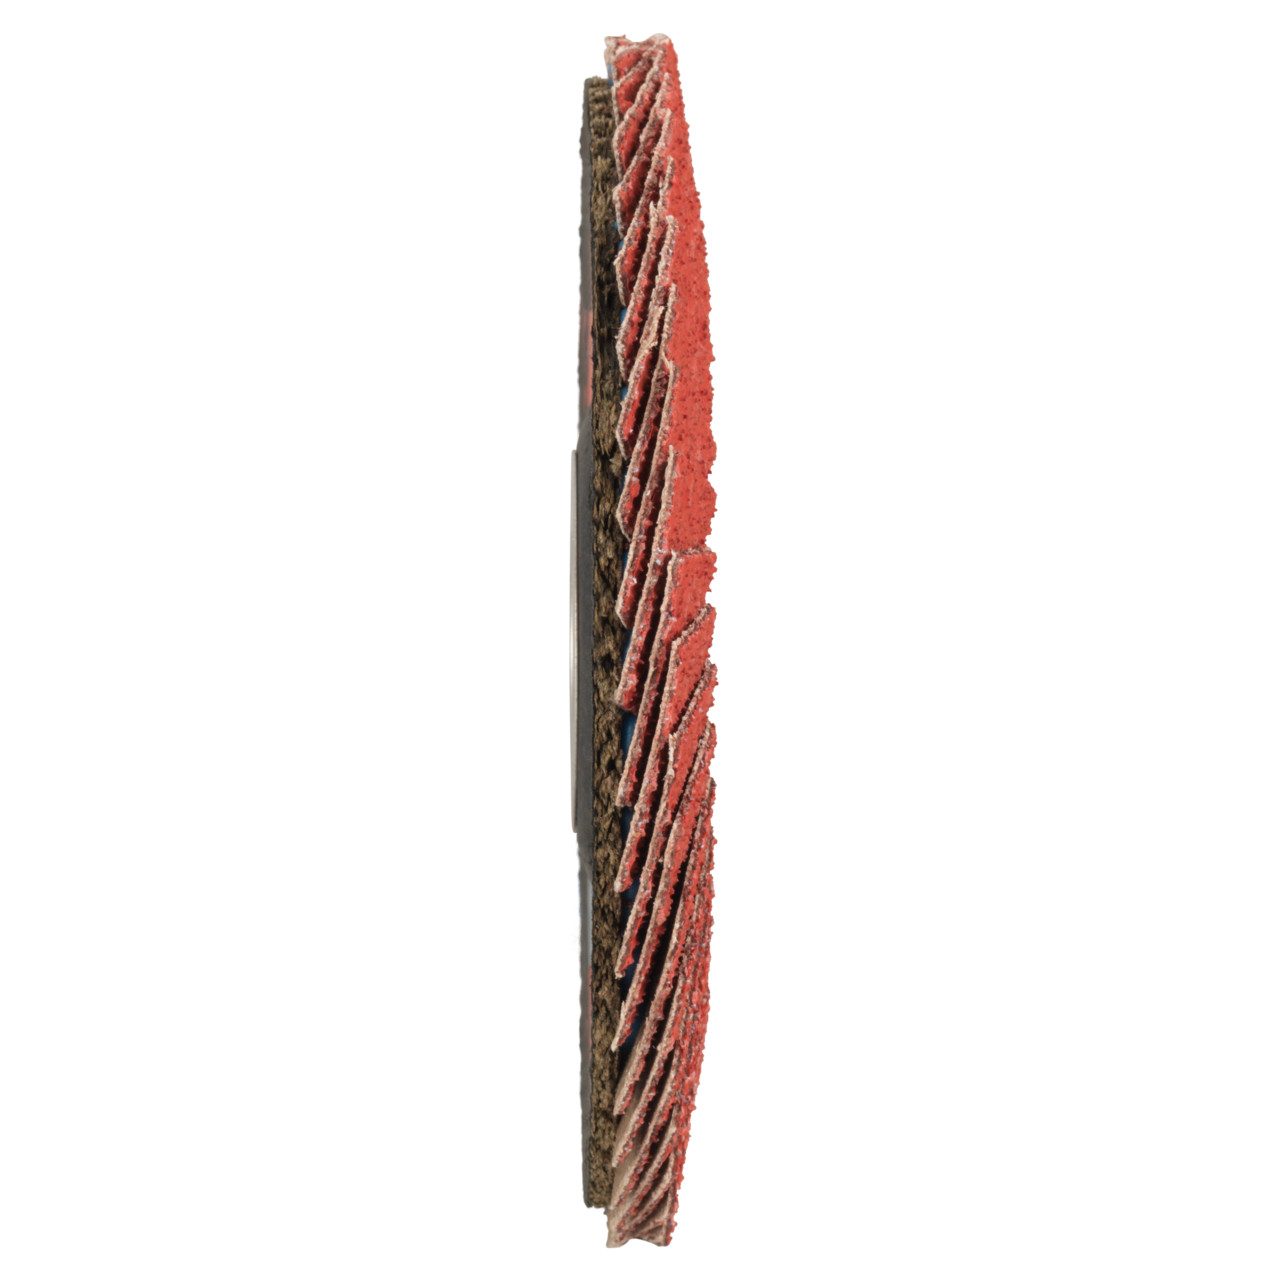 Tyrolit Getande borgring DxH 115x22,2 CERAMIC voor roestvrij staal, P40, vorm: 27A - slingerontwerp (glasvezeldragerhuisontwerp), Art. 645130